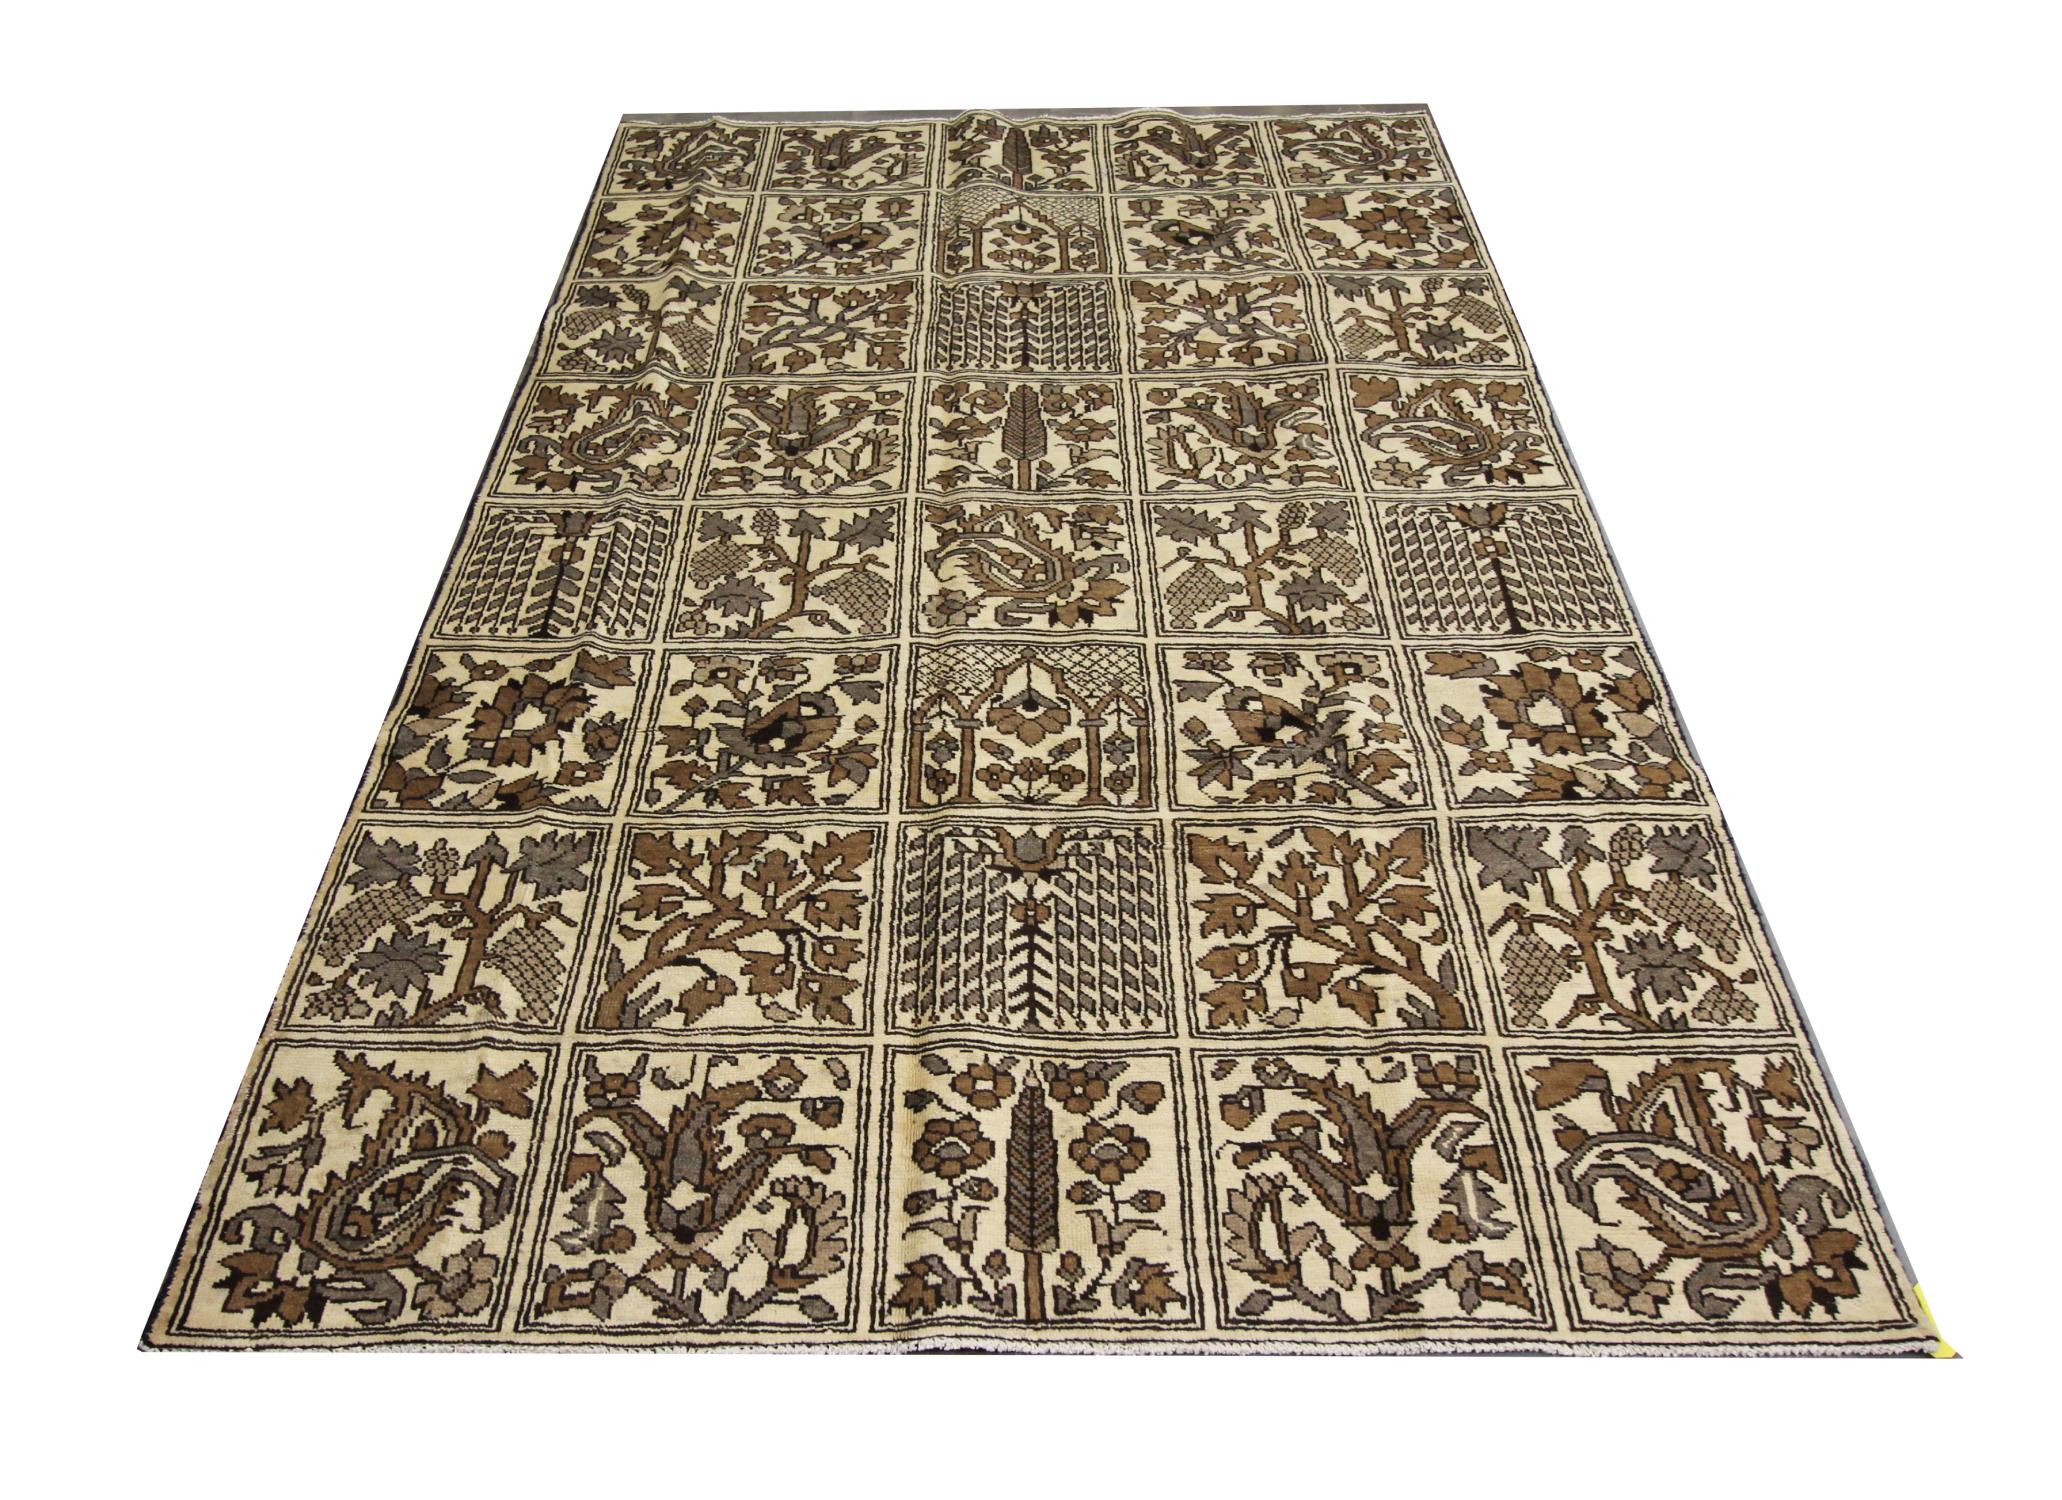 Ce grand tapis oriental est un bel exemple de tapis turcs tissés au début du 20e siècle. Le motif général de ce tapis vintage a été tissé sur un riche champ beige avec des accents marron, beige et chêne qui constituent le bloc décoratif de fleurs et